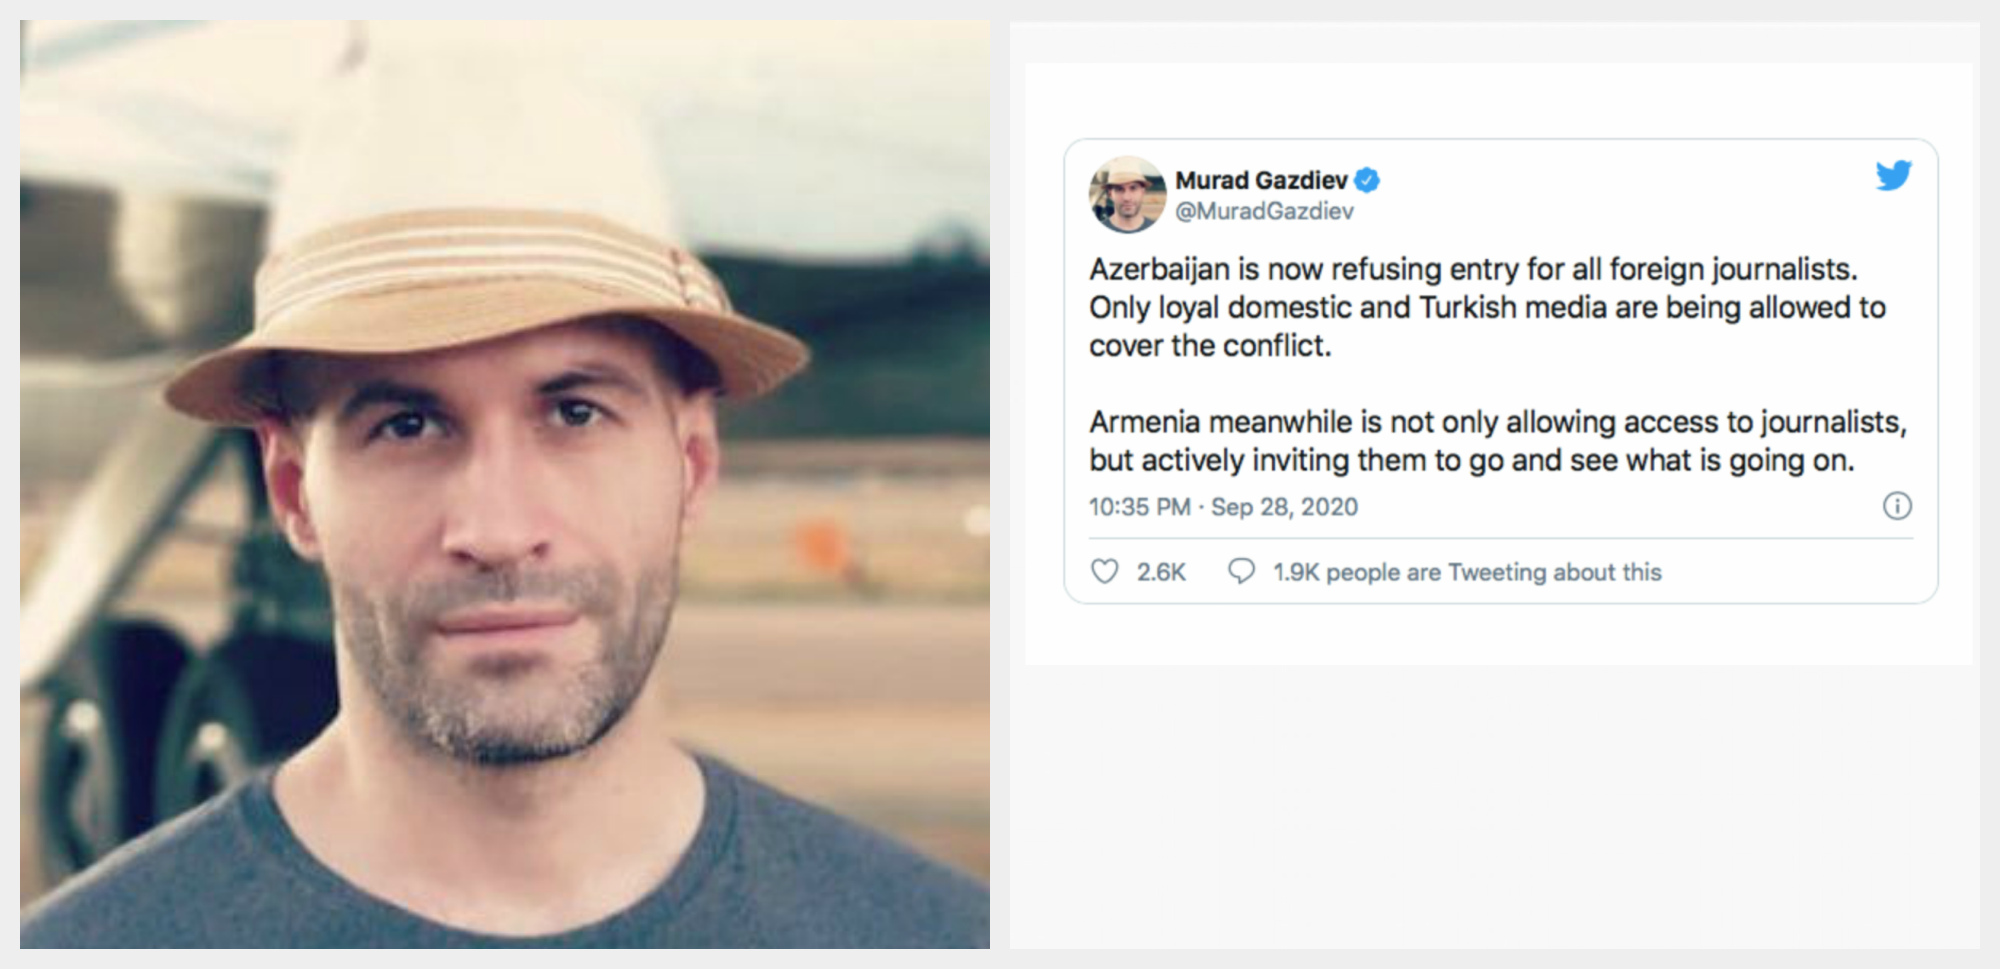 Ադրբեջանը արտասահմանյան լրագրողներից մուտք երկիր թույլ է տալիս միայն «լոյալ թուրքականներին»